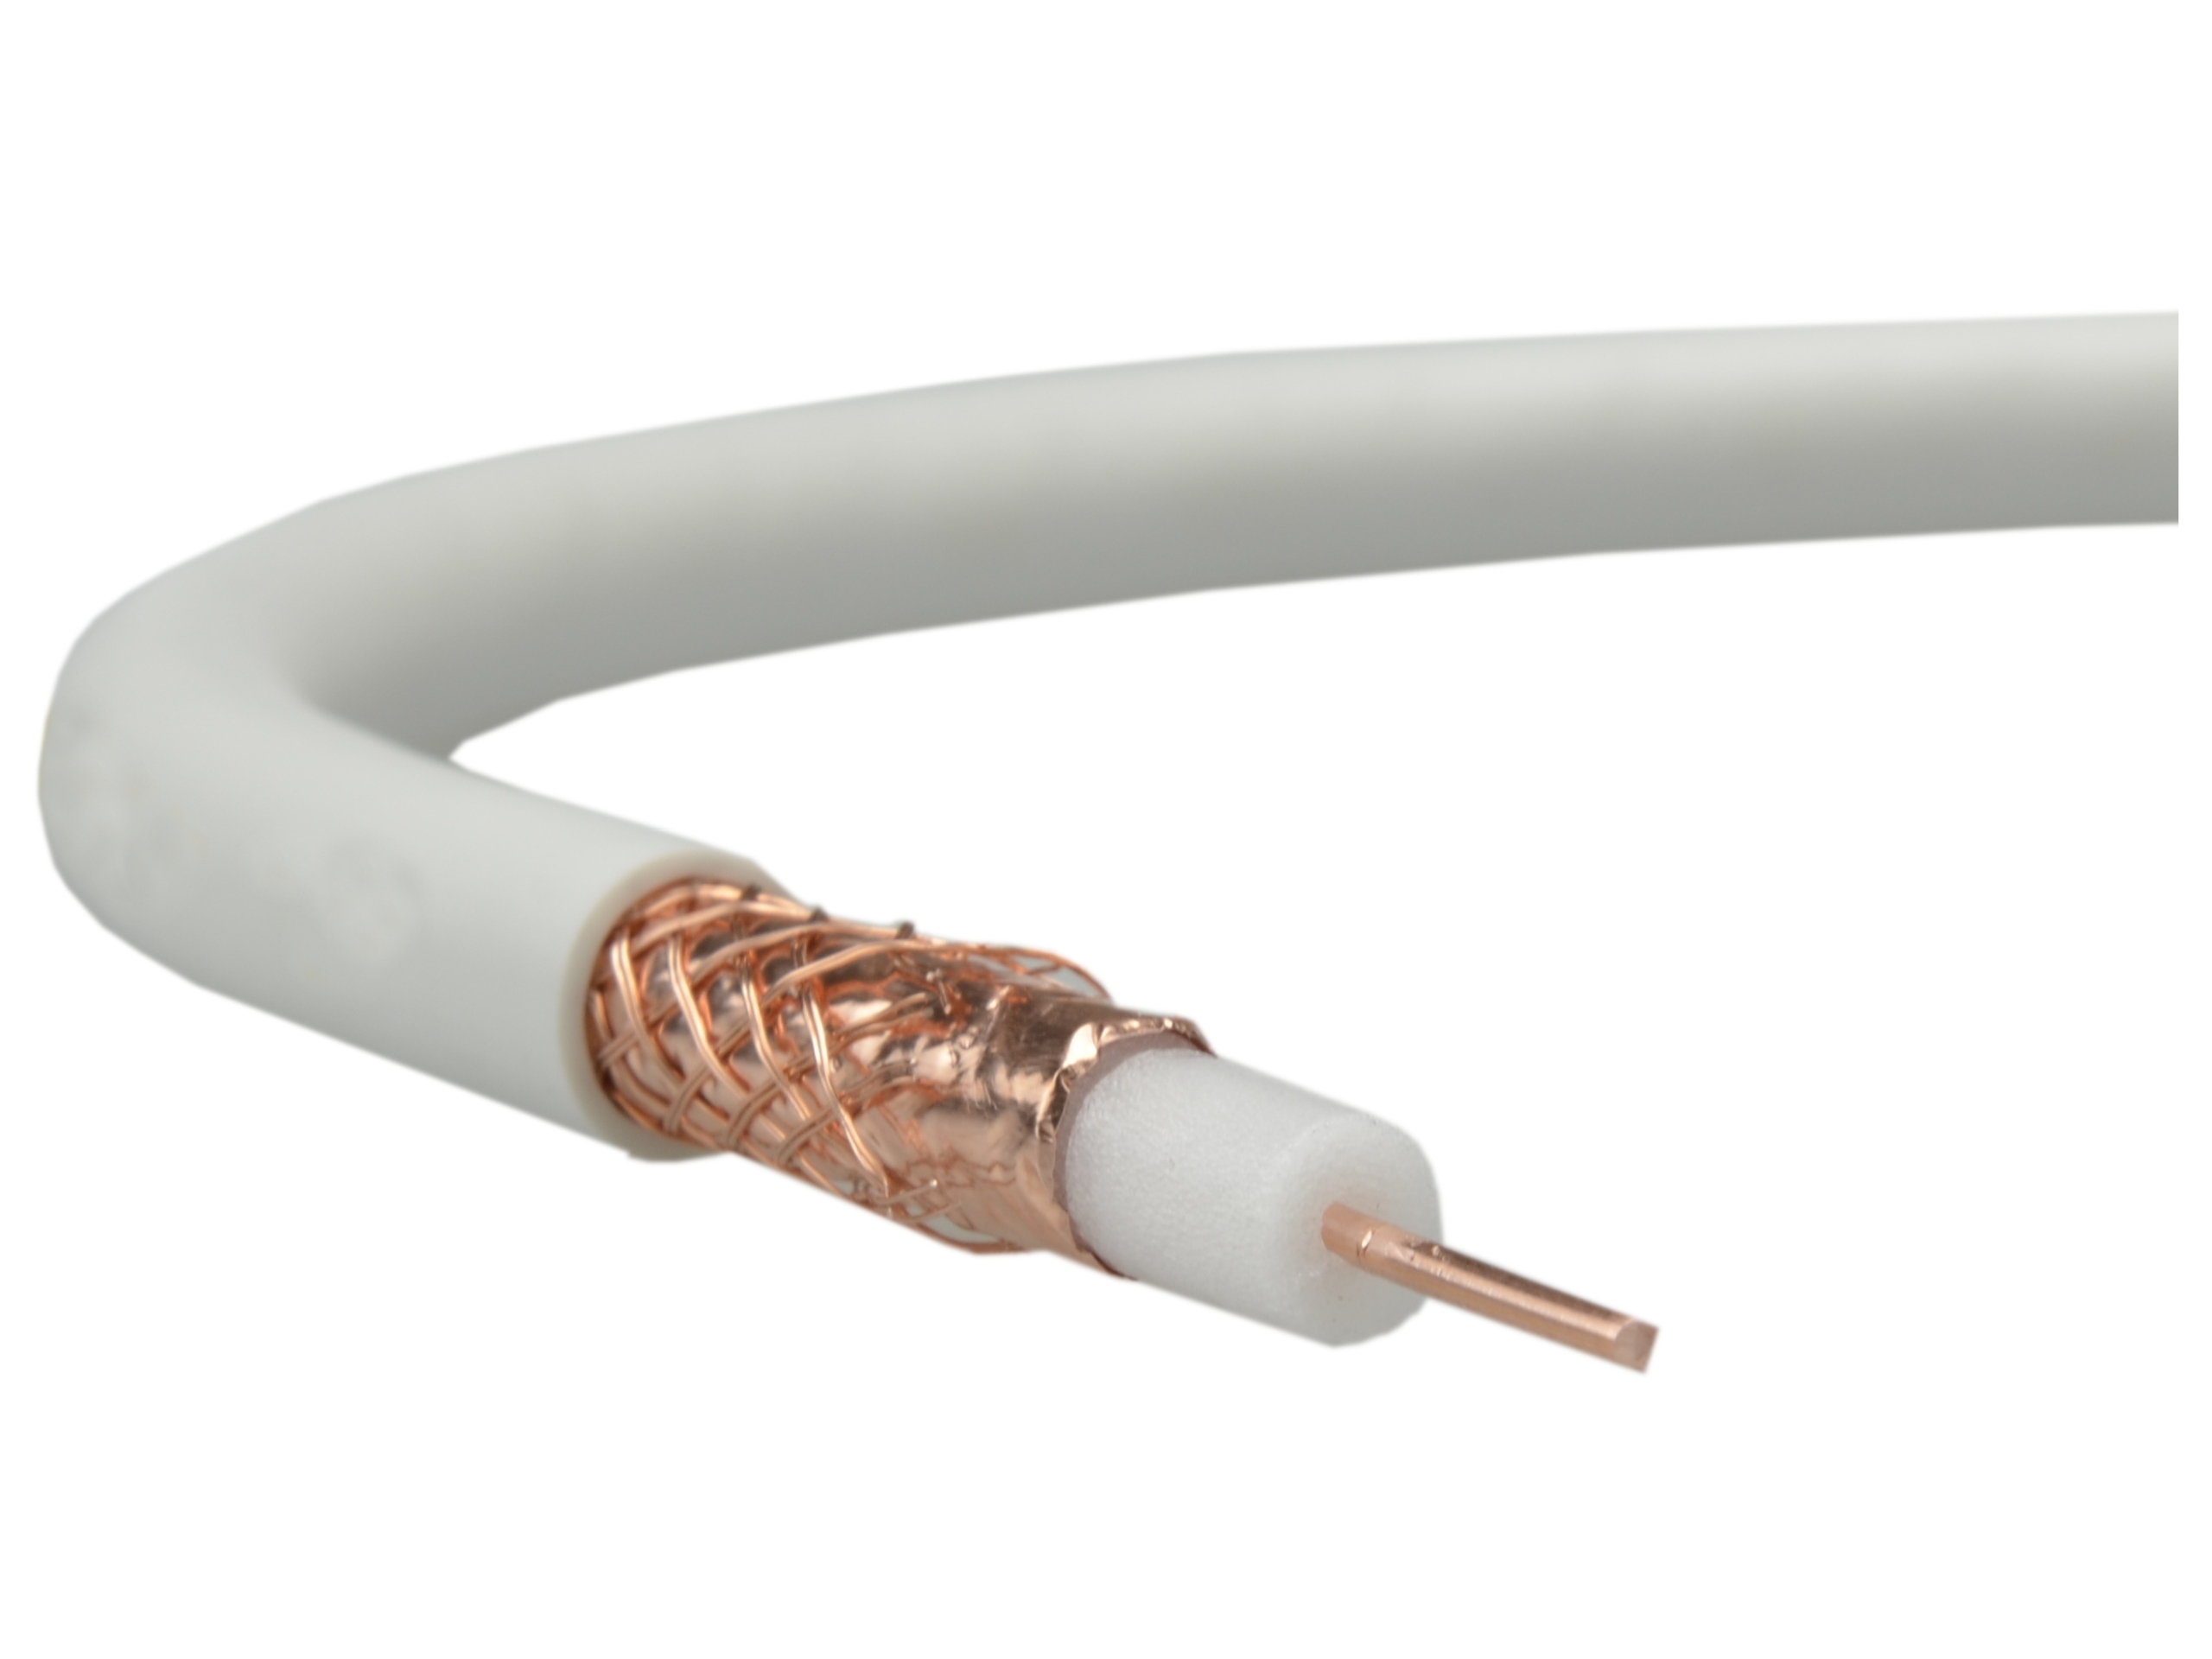 Кабель антенный кабель SATTVHD 75ohm1000 ТС купить с доставкой​ из Польши​ с Allegro на FastBox 6737014833